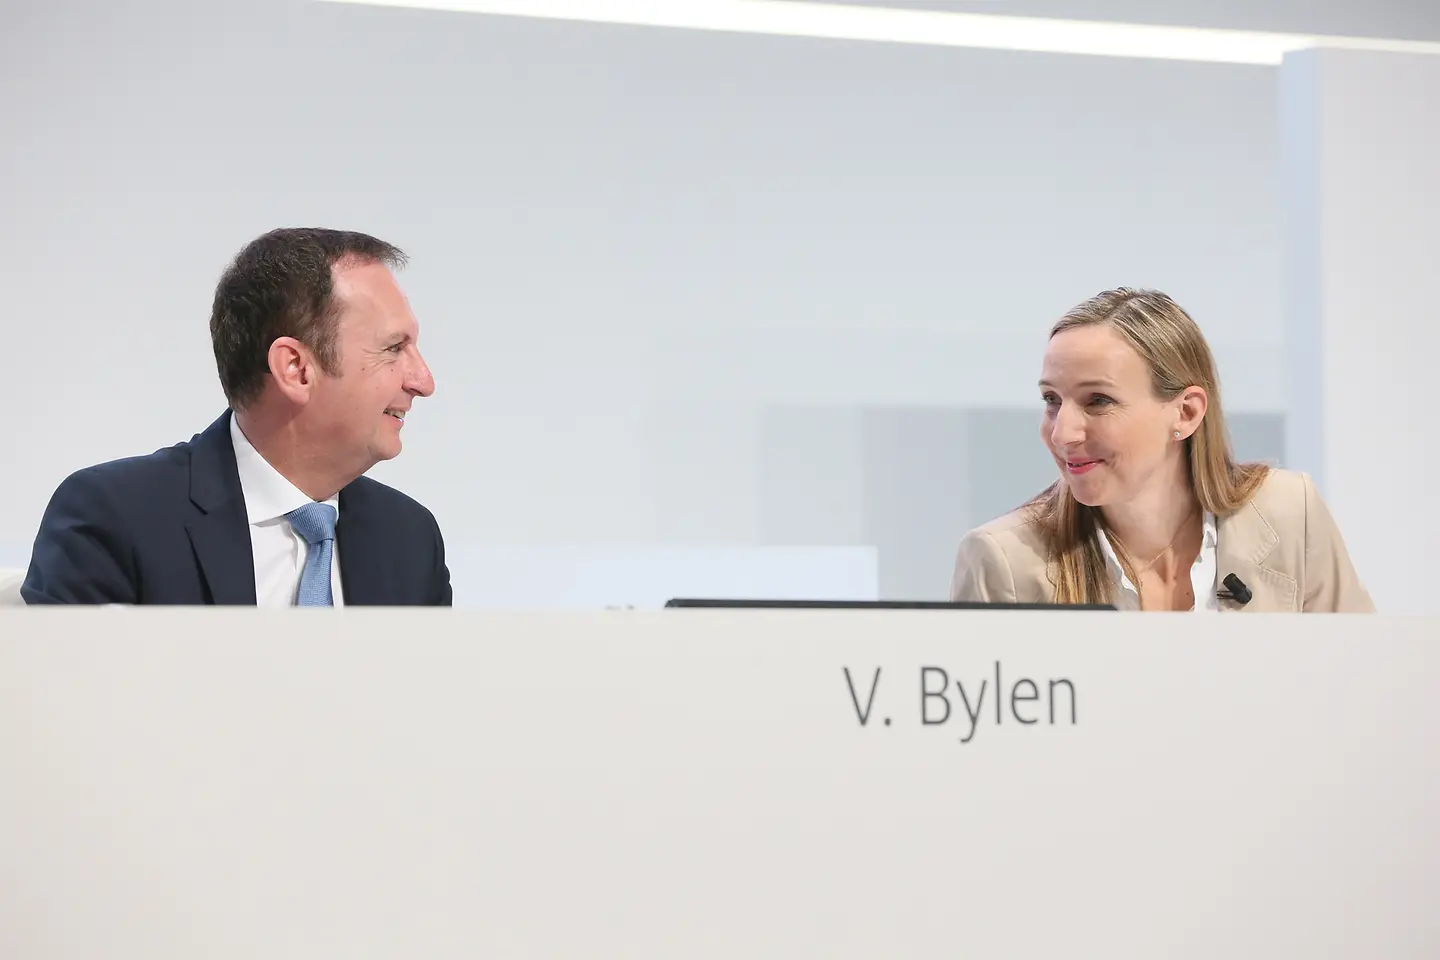 
Hans Van Bylen, Vorsitzender des Vorstands, und Dr. Simone Bagel-Trah, Vorsitzende des Aufsichtsrats und Gesellschafterausschusses